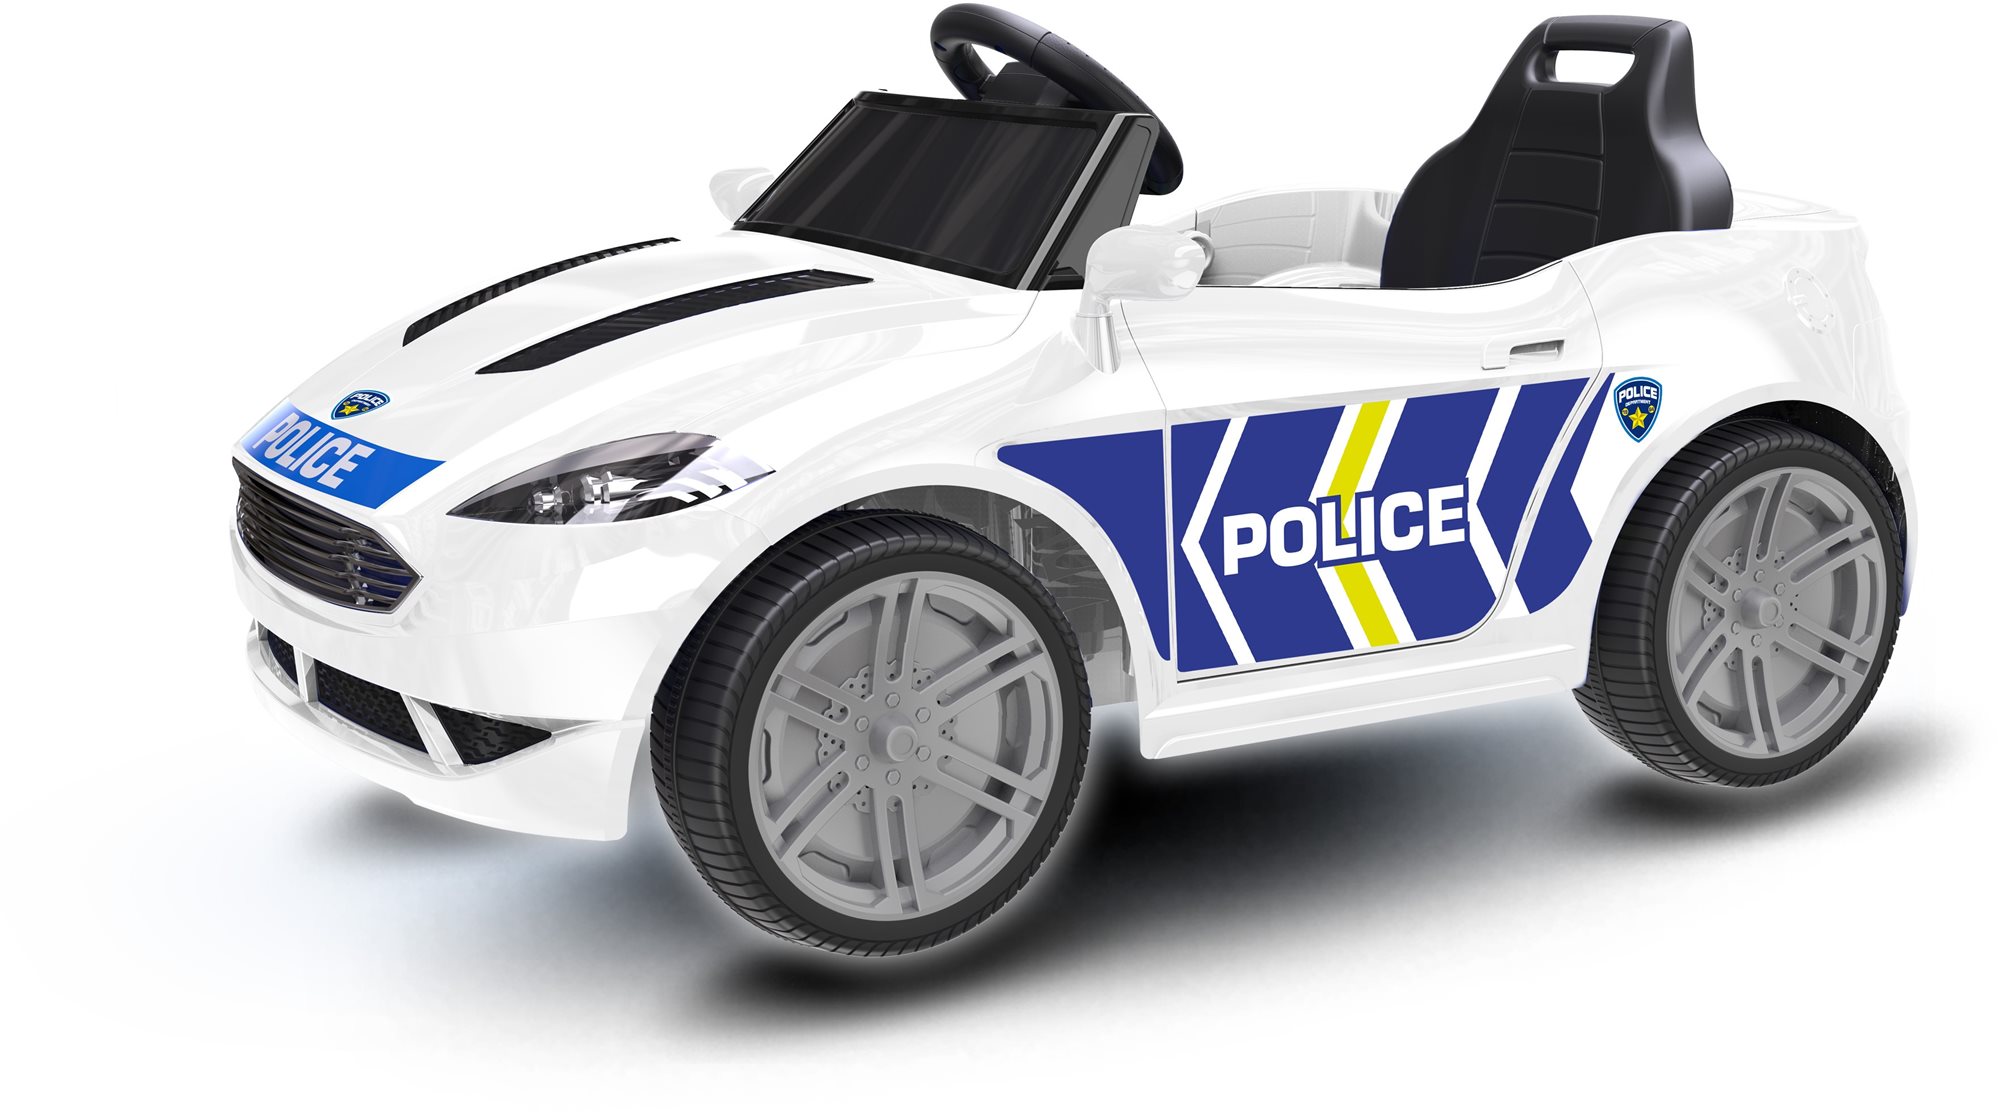 Elektromos autó gyerekeknek Rendőrségi autó Evo akkumulátorral